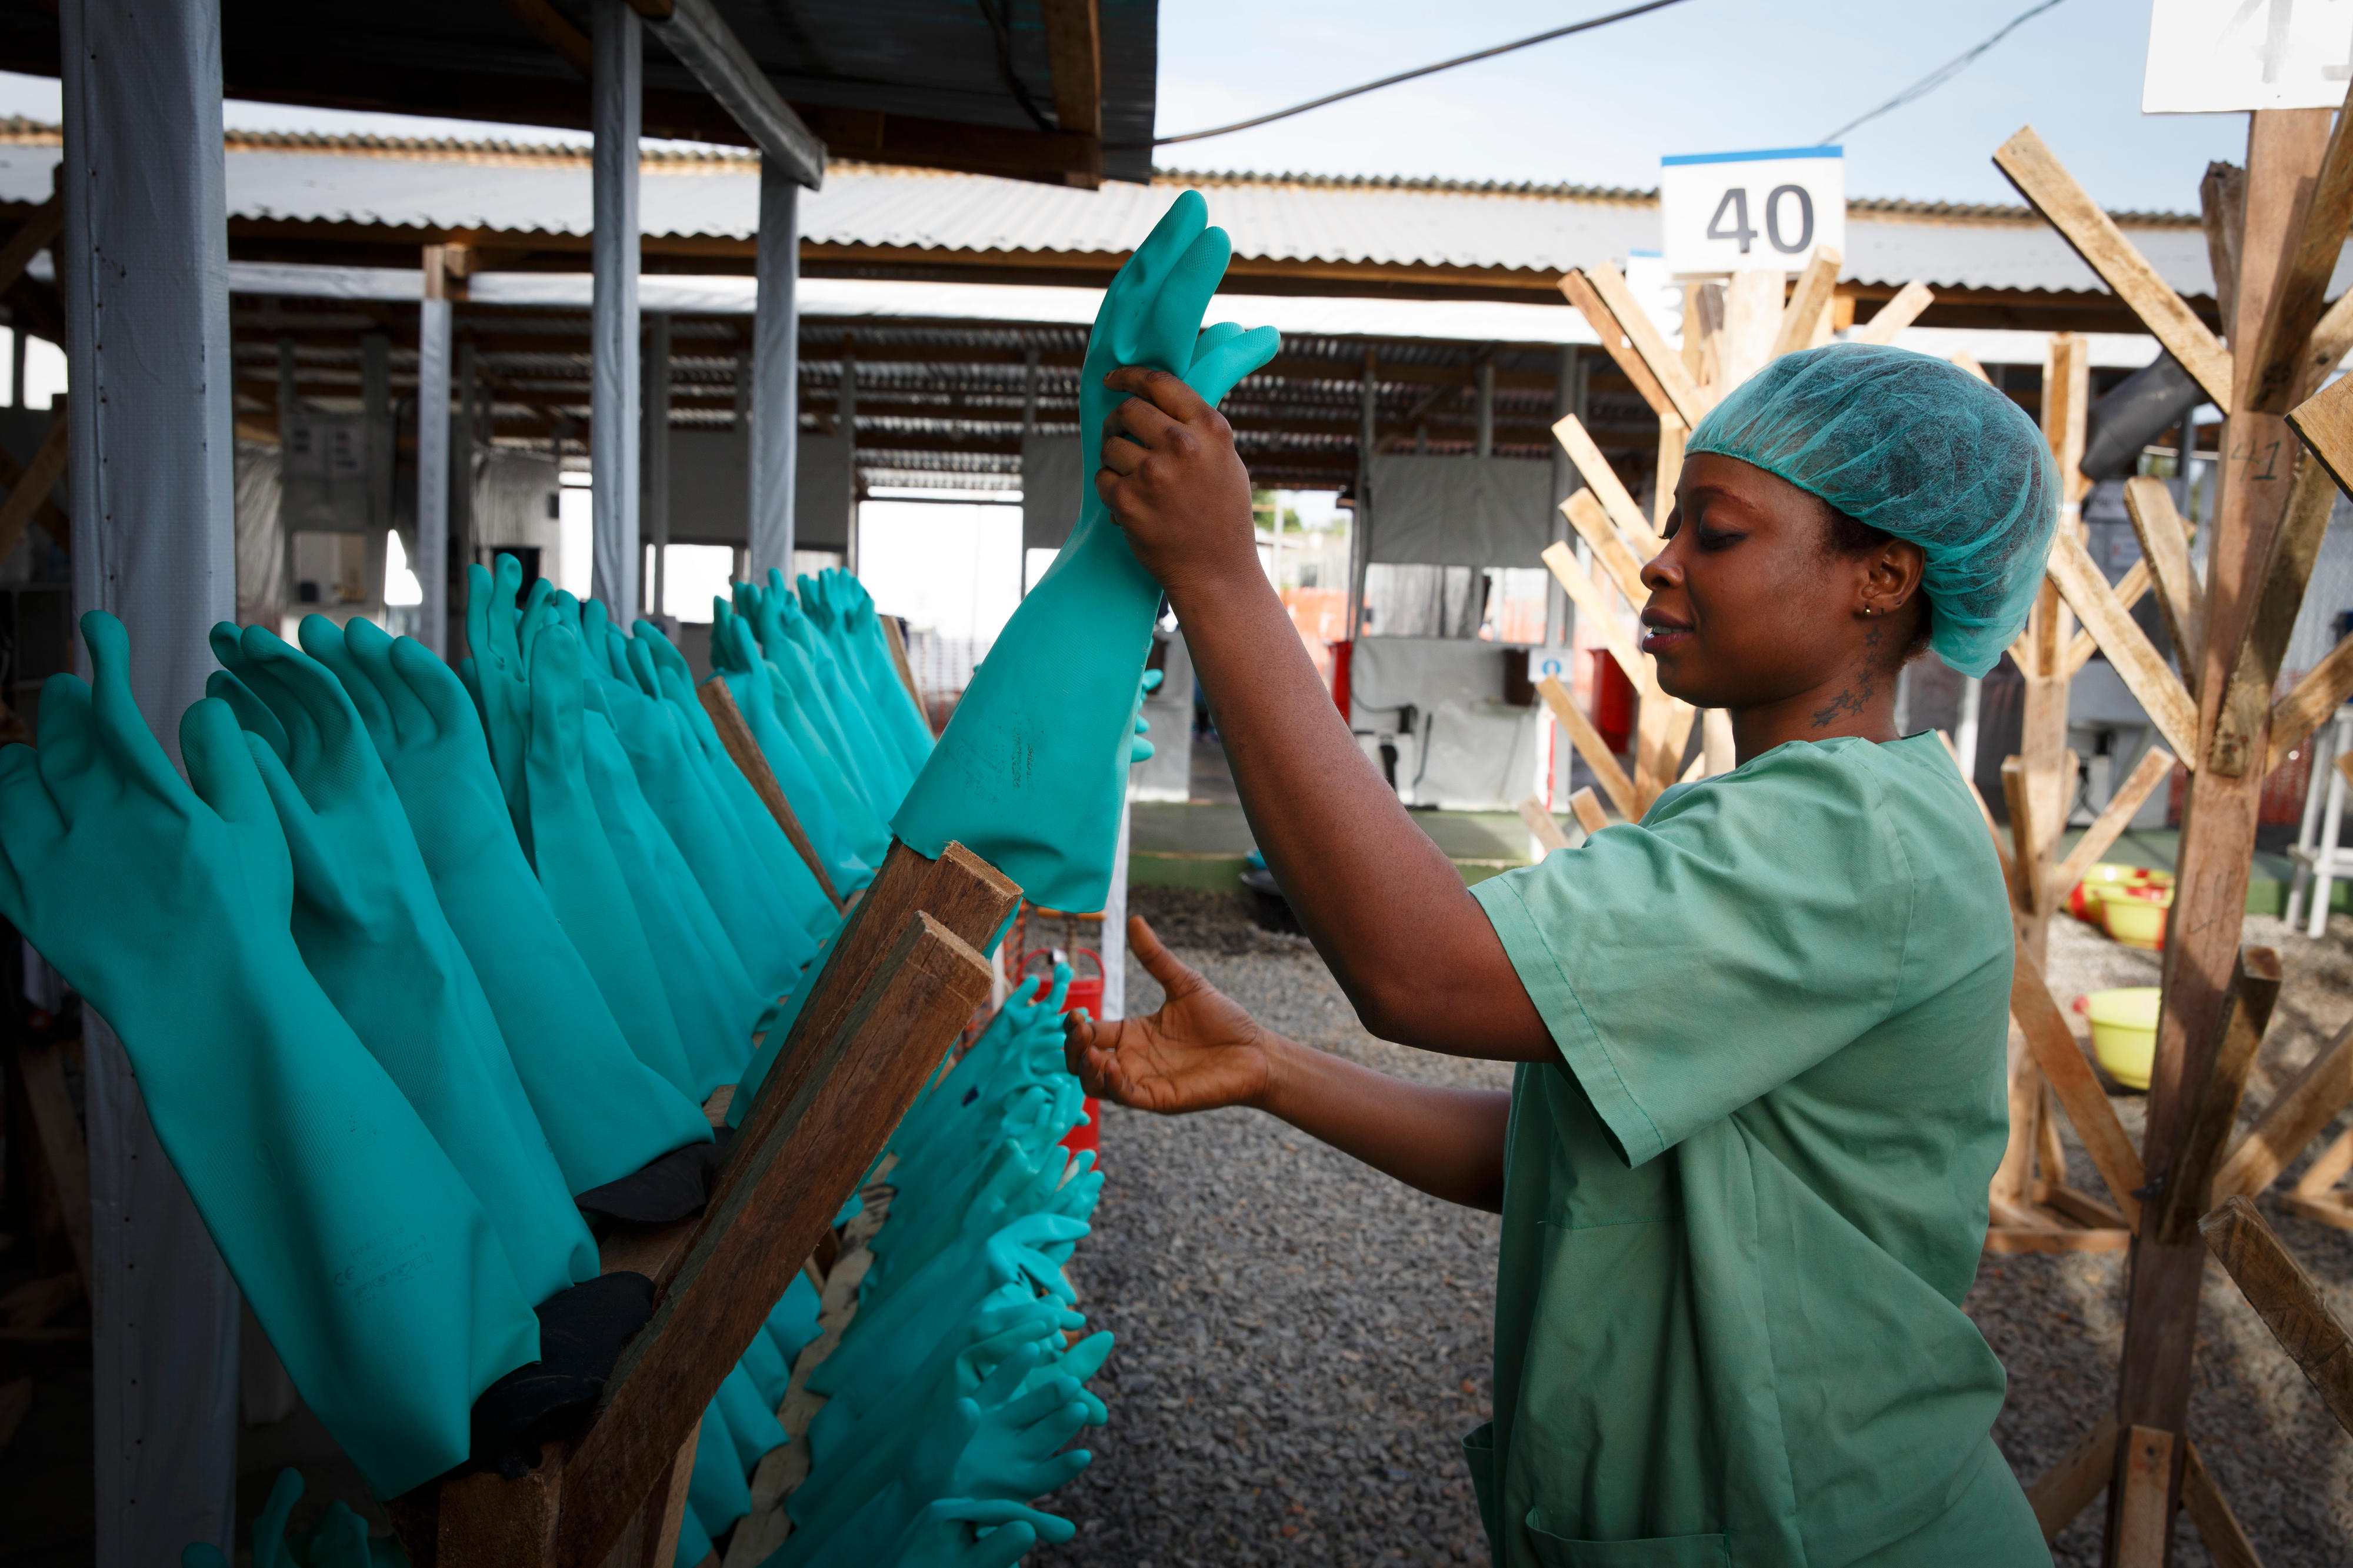 Trocknende Gummihandschuhe in einer deutschen Einrichtung zur Versorgung von Ebola-Patienten in Monrovia, Liberia